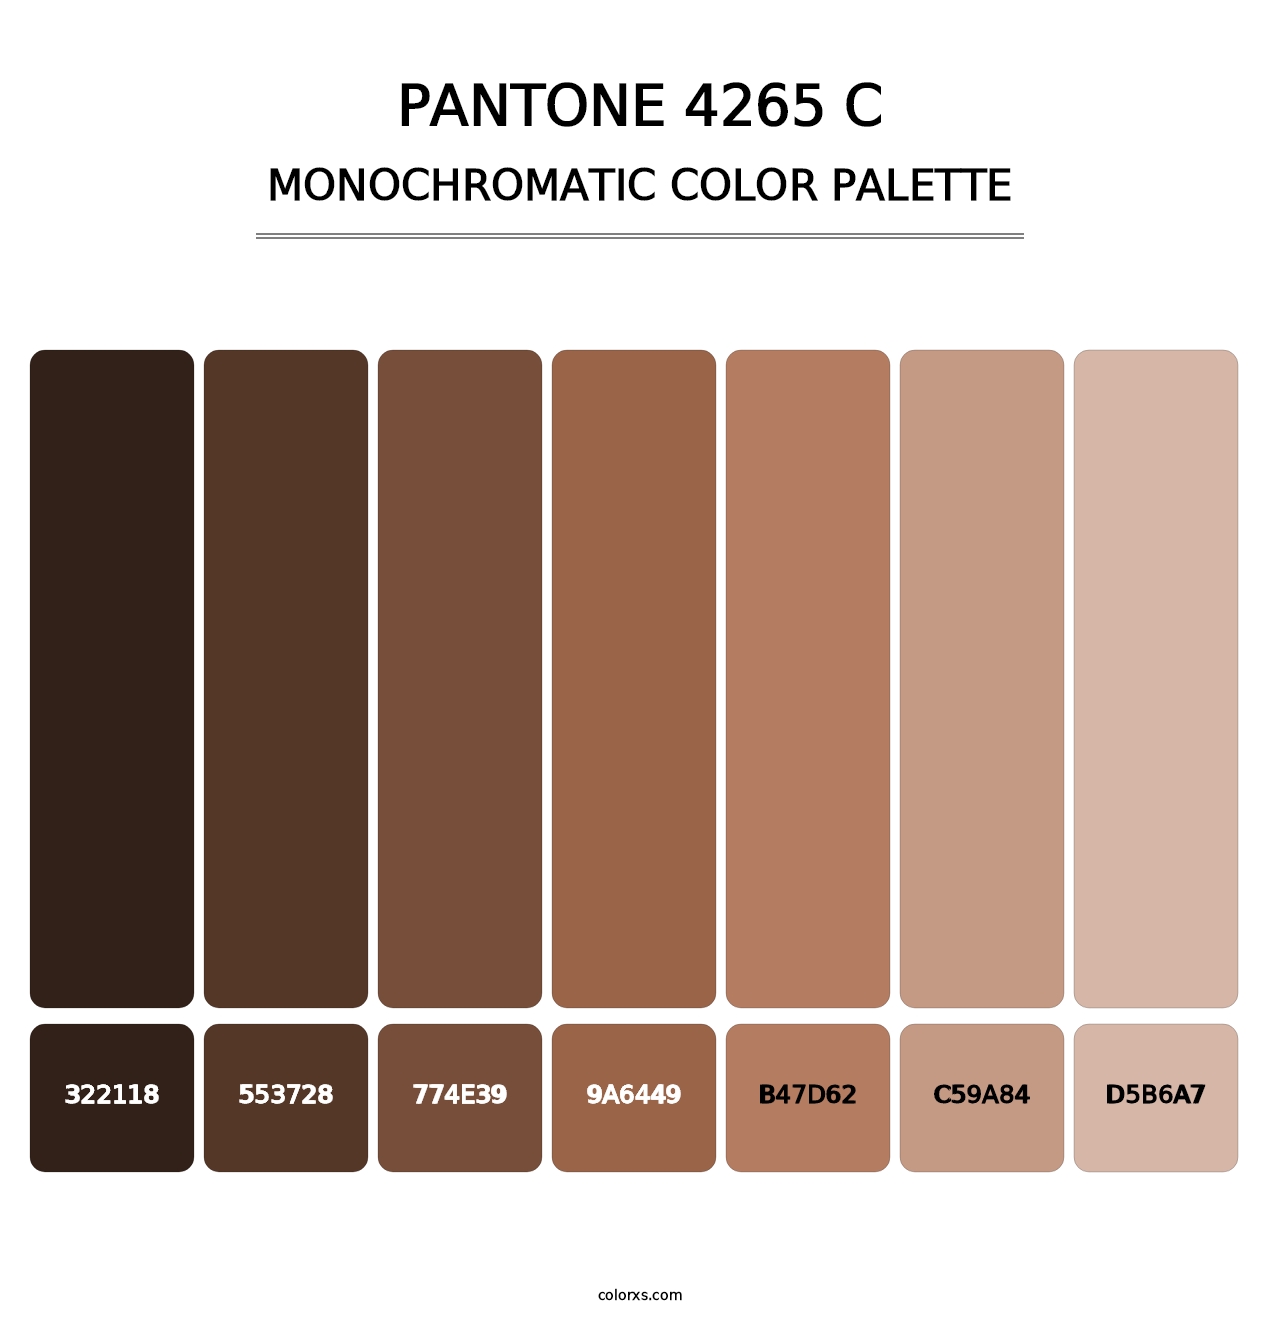 PANTONE 4265 C - Monochromatic Color Palette